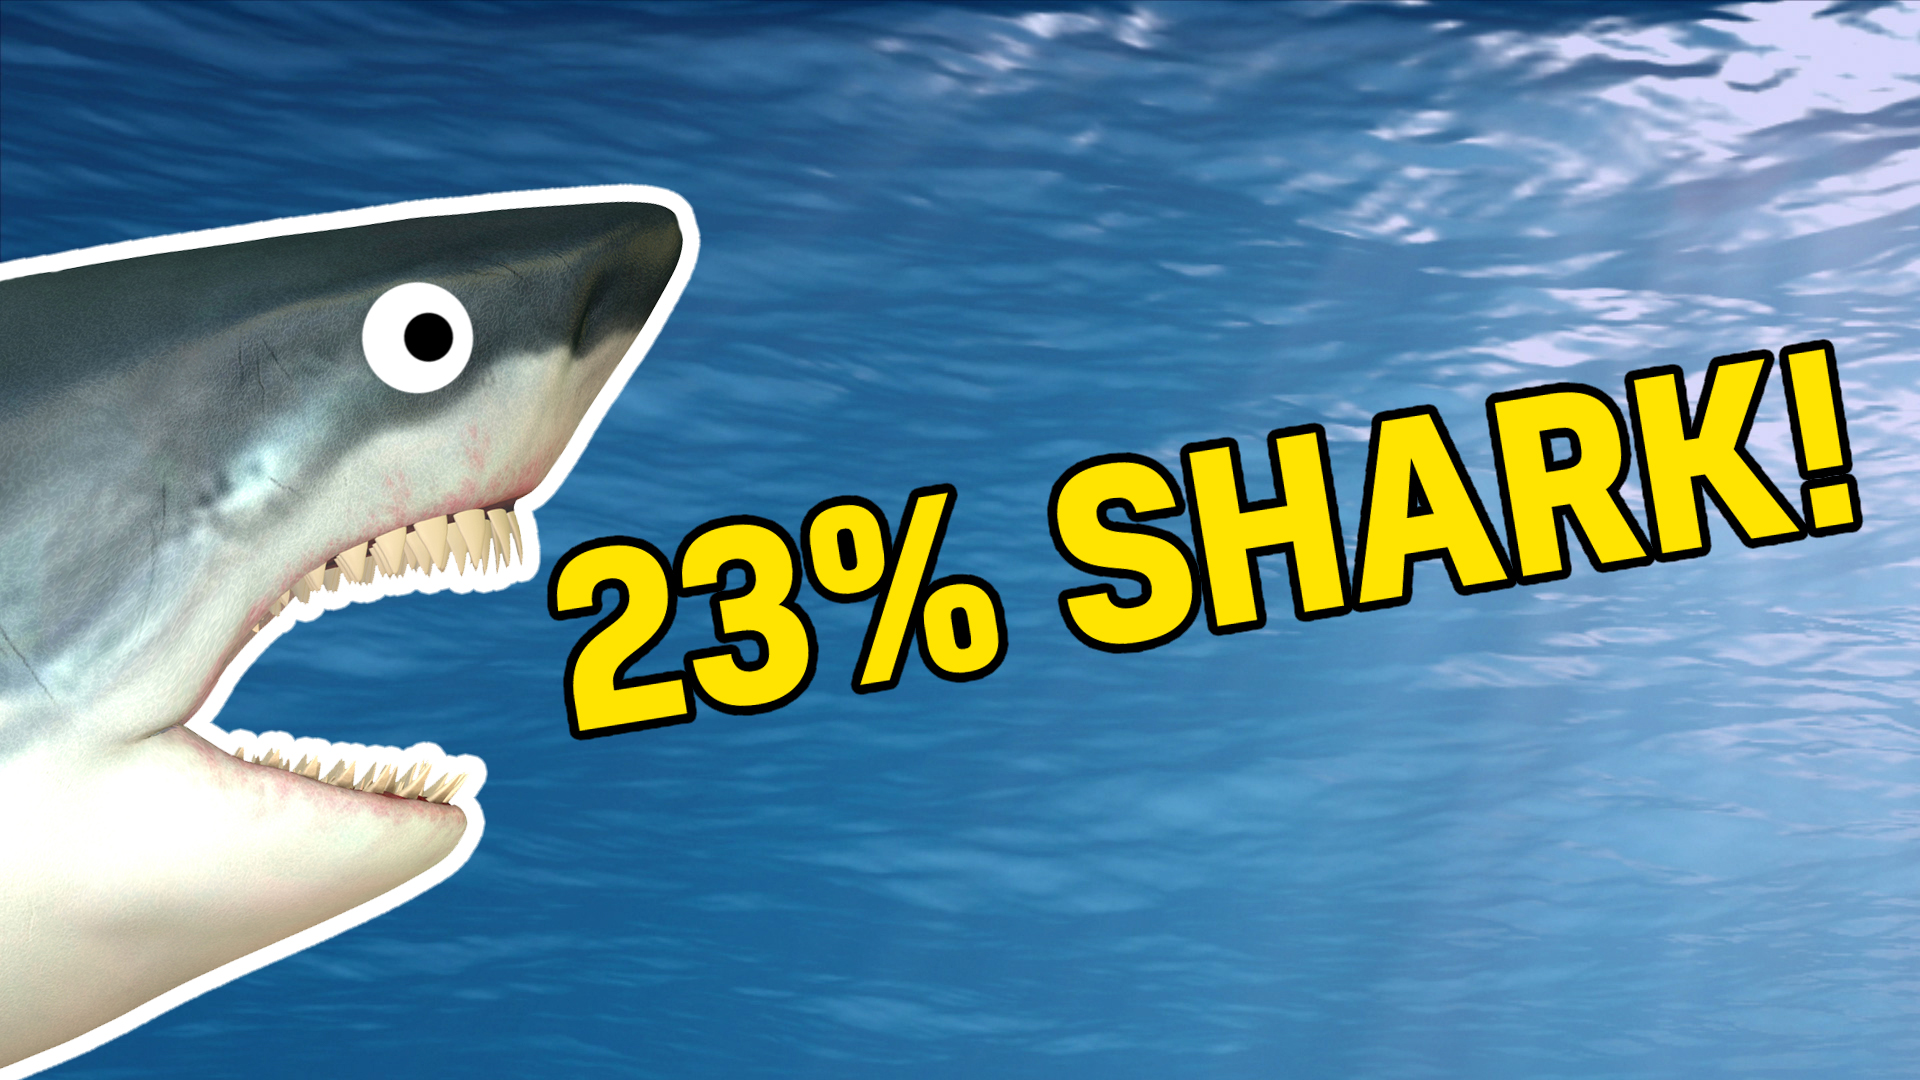 23% shark